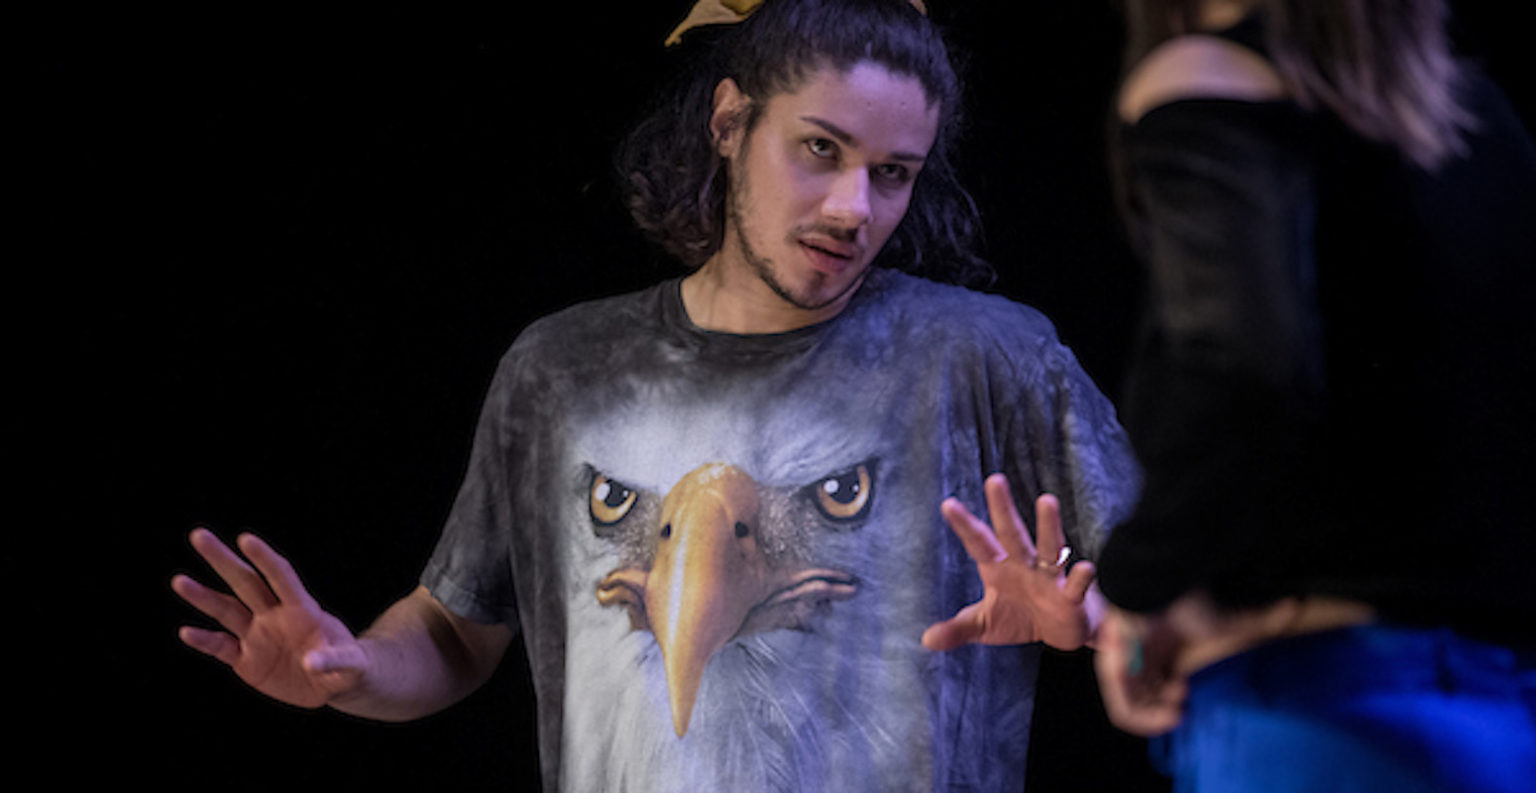 On voit un acteur de la pièce Orphans tendre les bras, les mains ouvertes. Il porte un t-shirt avec une tête d'aigle.